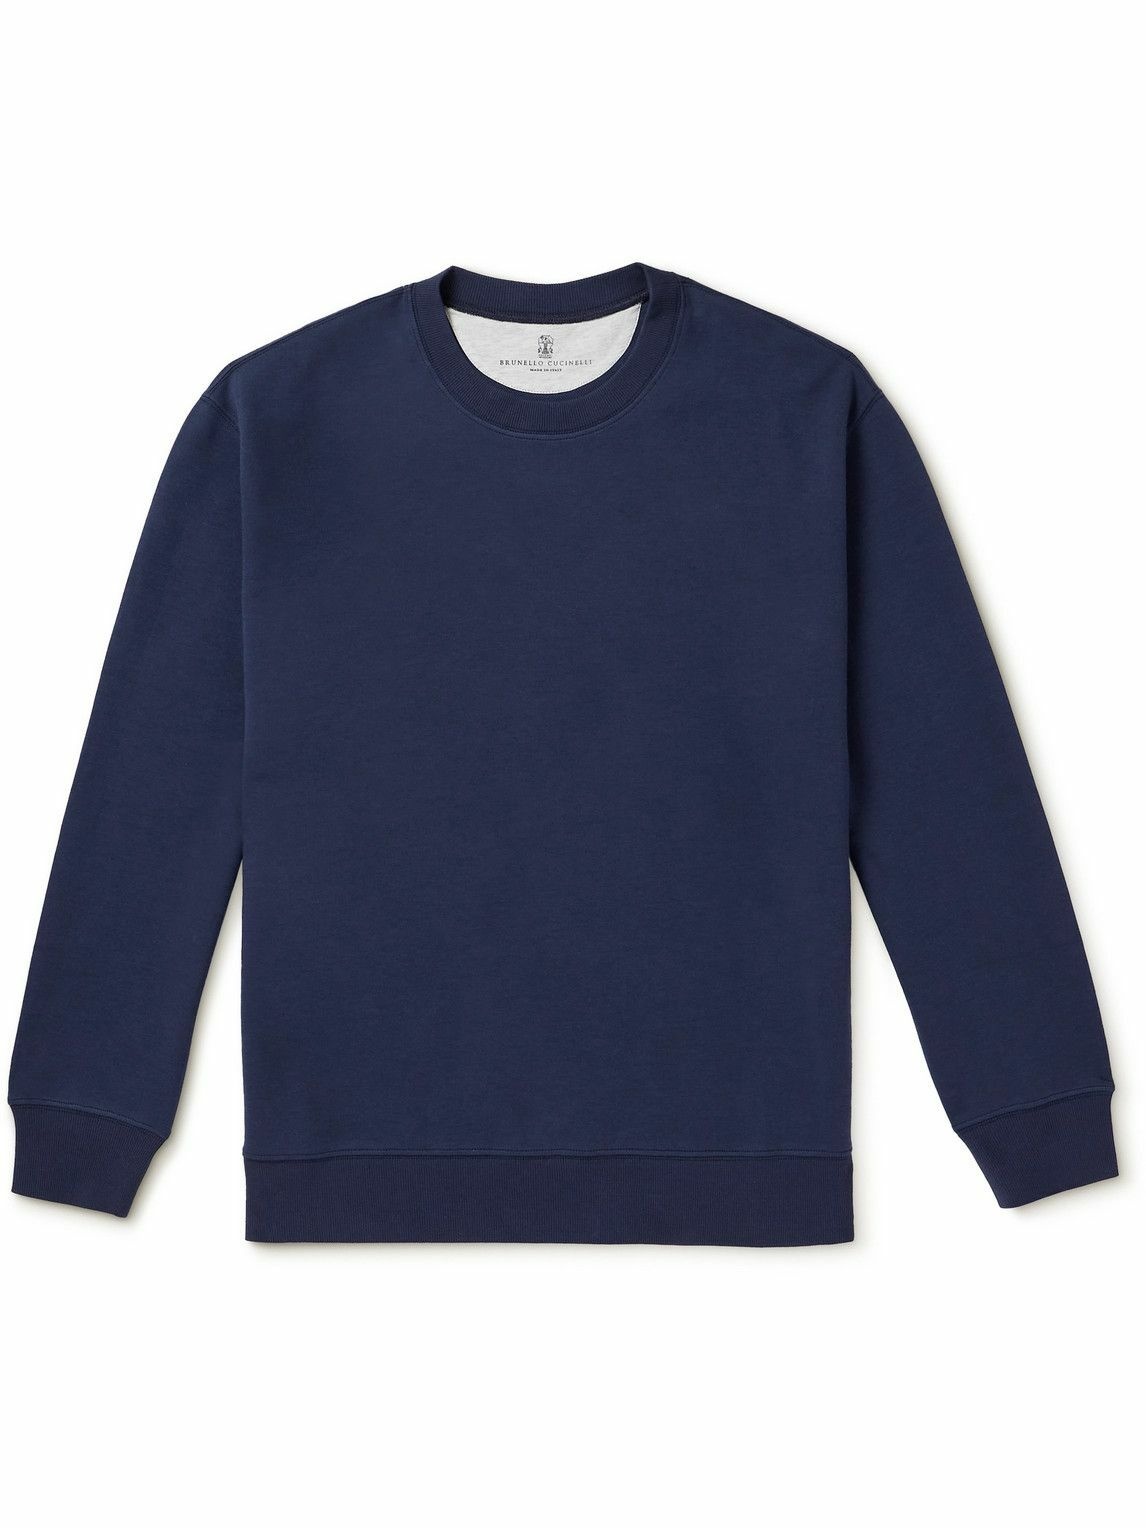 Photo: Brunello Cucinelli - Cotton-Blend Jersey Sweatshirt - Blue